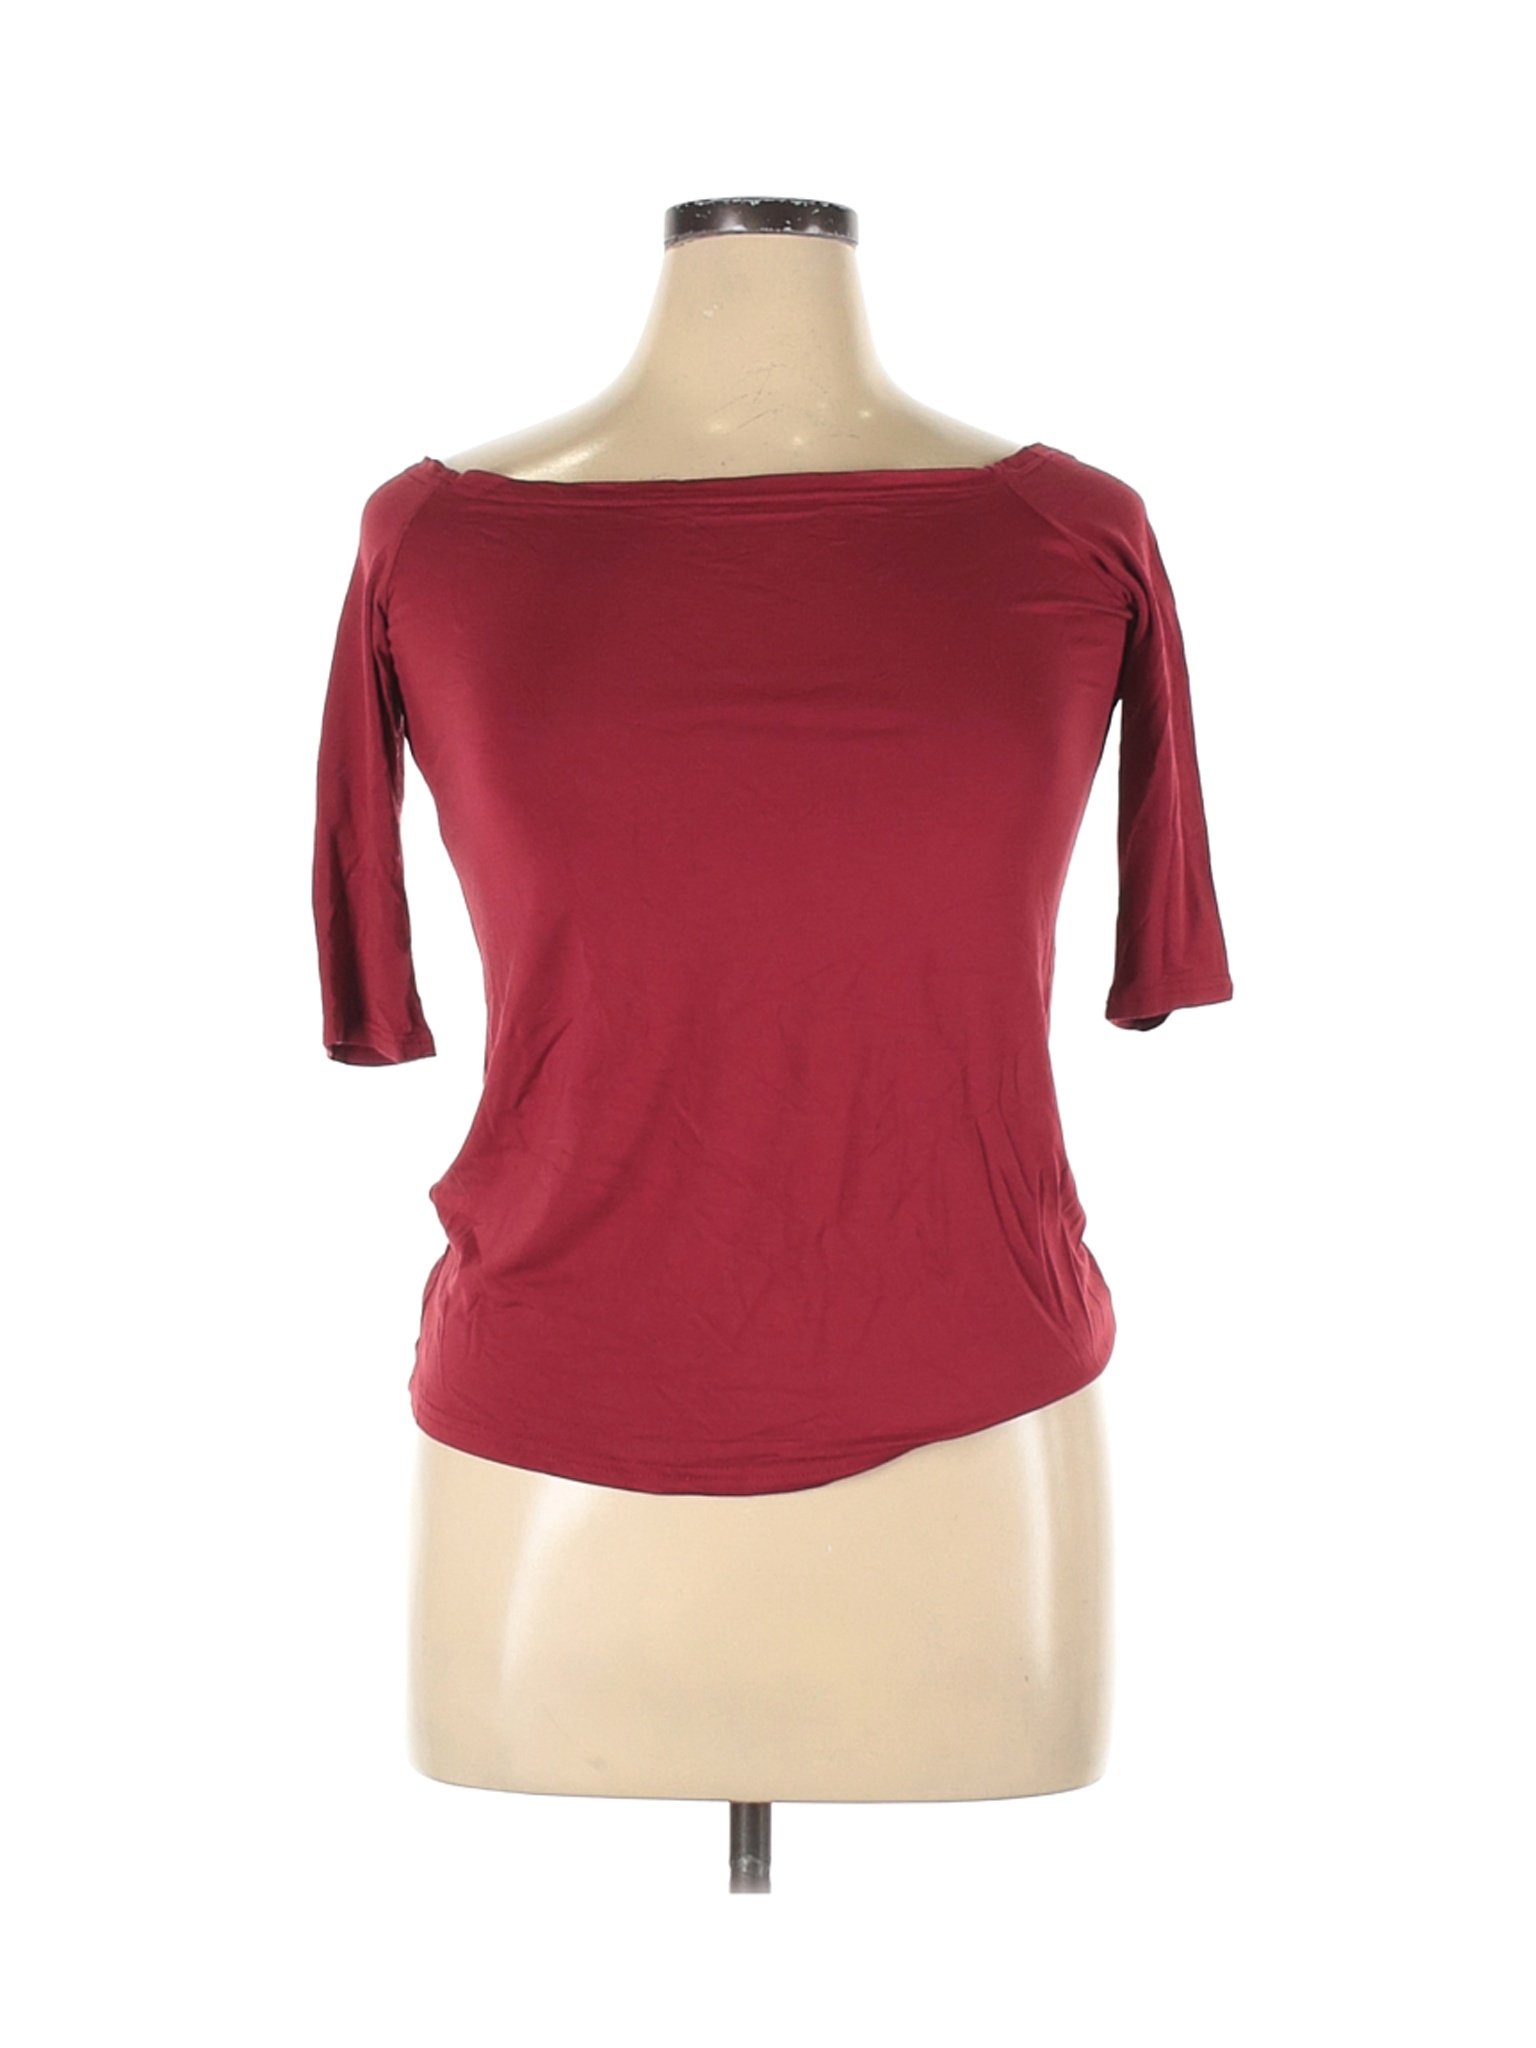 Sarin Mathews Women Red 3/4 Sleeve T-Shirt XL | eBay